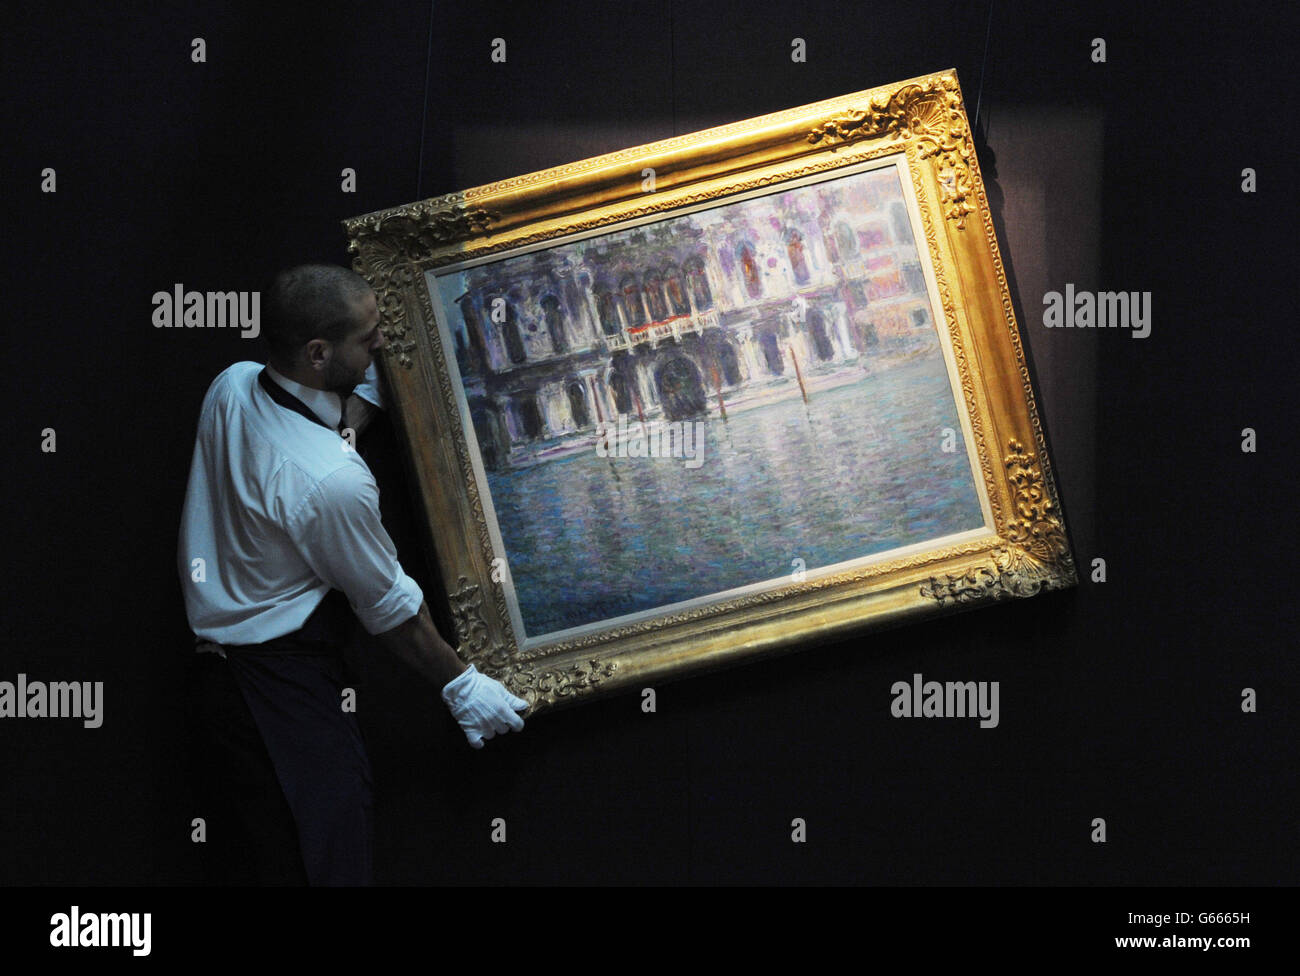 Vision of Venice von Claude Monet wird heute im Rahmen der Sommerverkaufssaison bei Sotheby's in London gezeigt und hofft, &ACIRC;£15 - &ACIRC;£20 Millionen zu holen, wenn es bis Juli verkauft wird. Die Verkäufe von Arbeiten im Wert von insgesamt rund &ACIRC;£100 Millionen stammen aus tausend Jahren westlicher Kunst Stockfoto